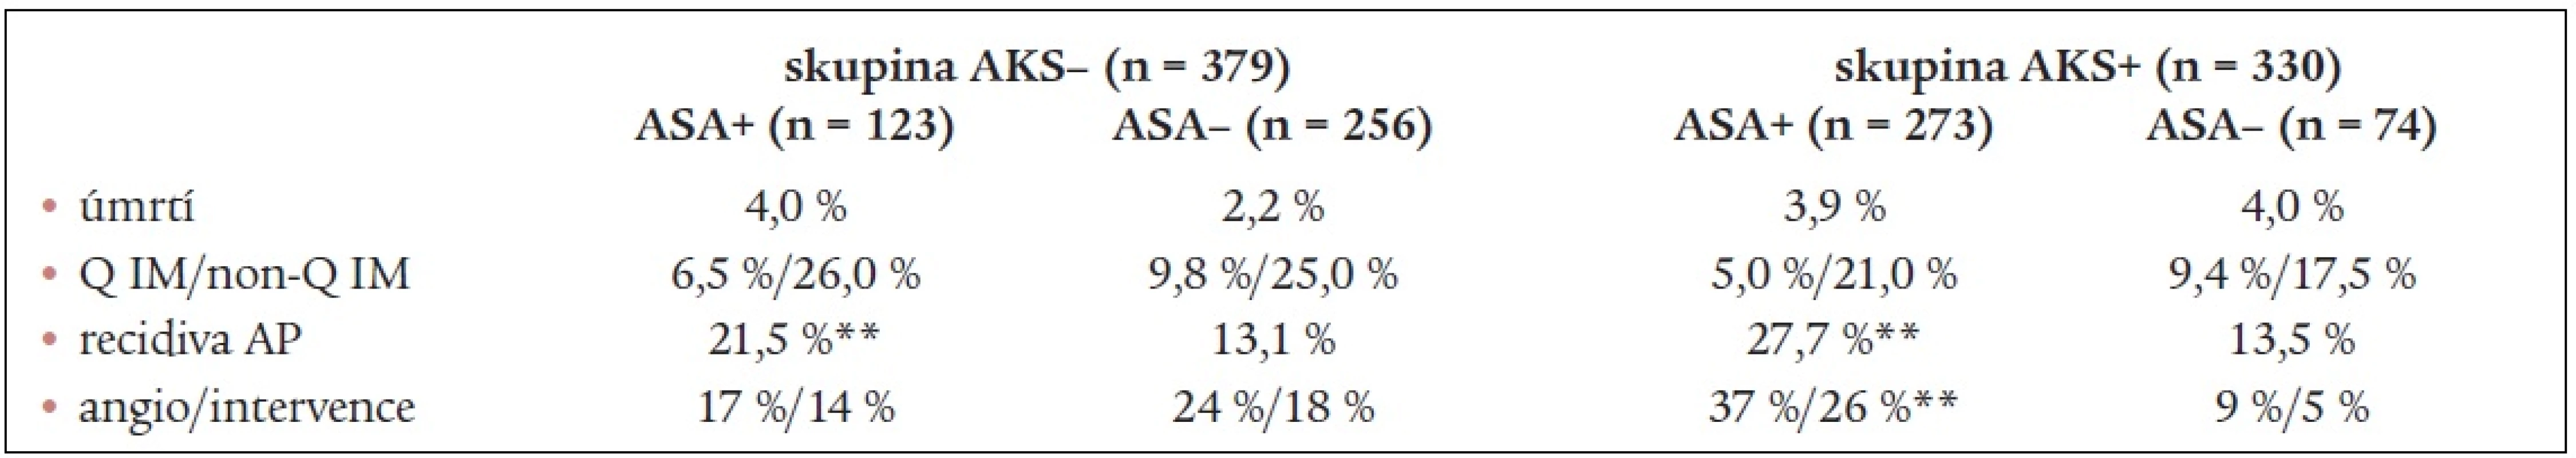 Výskyt sledovaných ukazatelů při rozdělení sledovaného souboru podle předchozího výskytu AKS.